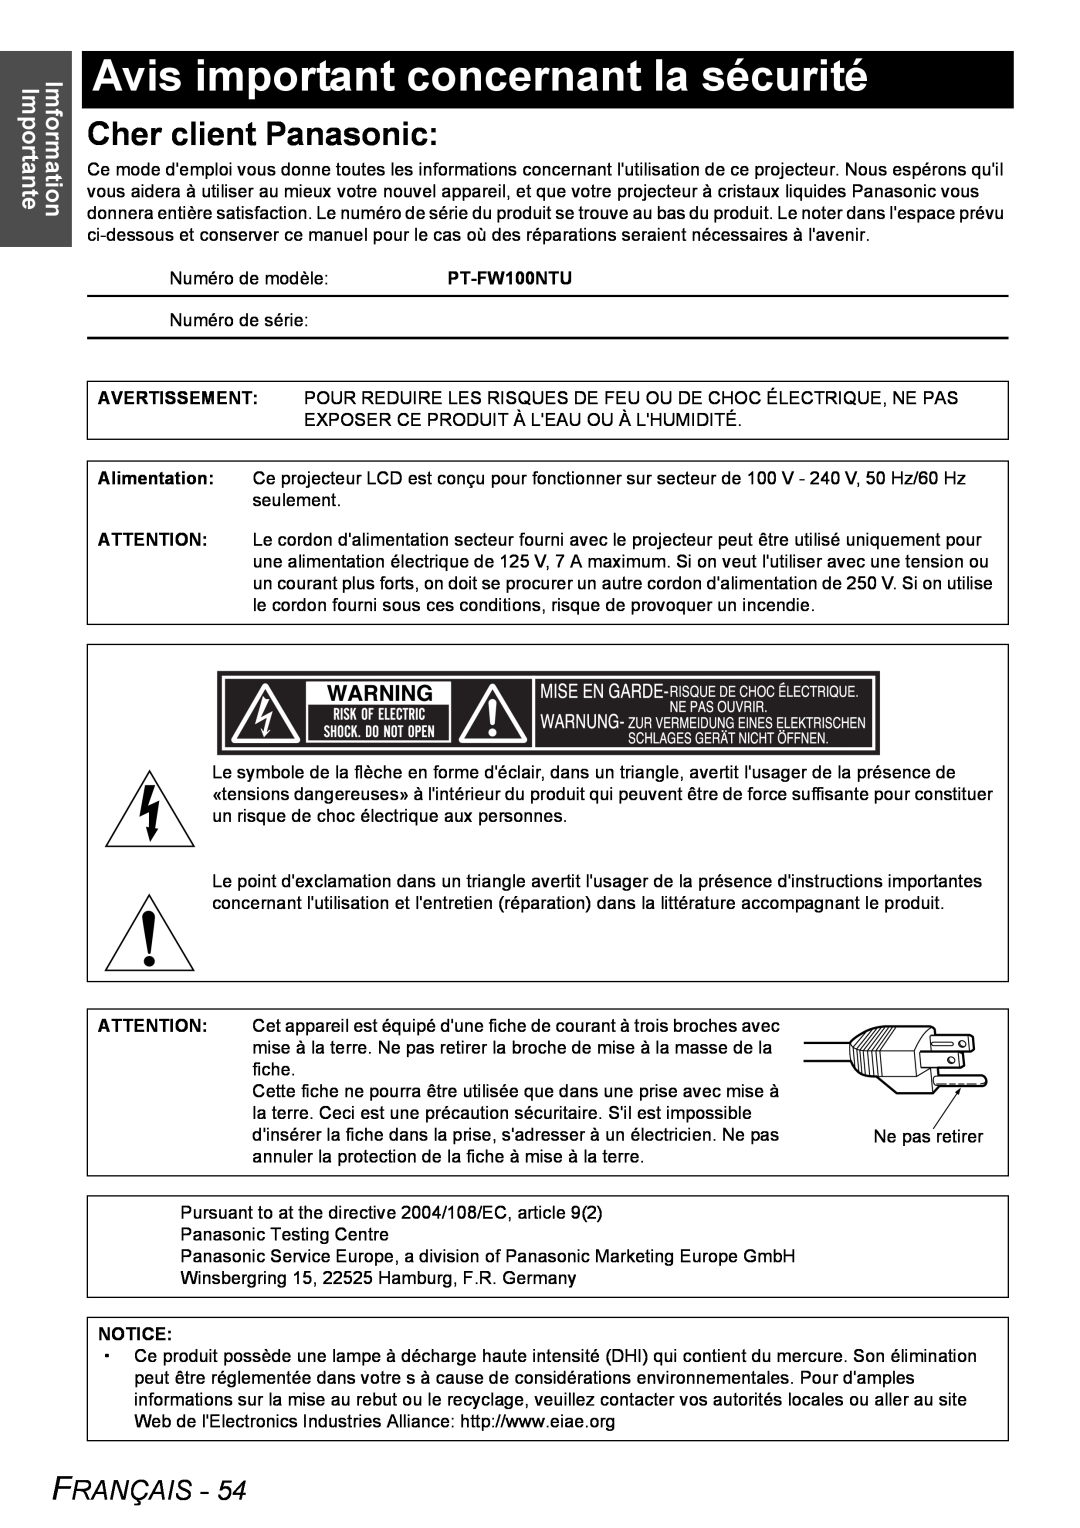 Philips PT-FW100NTU manual Avis important concernant la sécurité, Cher client Panasonic, Français, Imformation Importante 